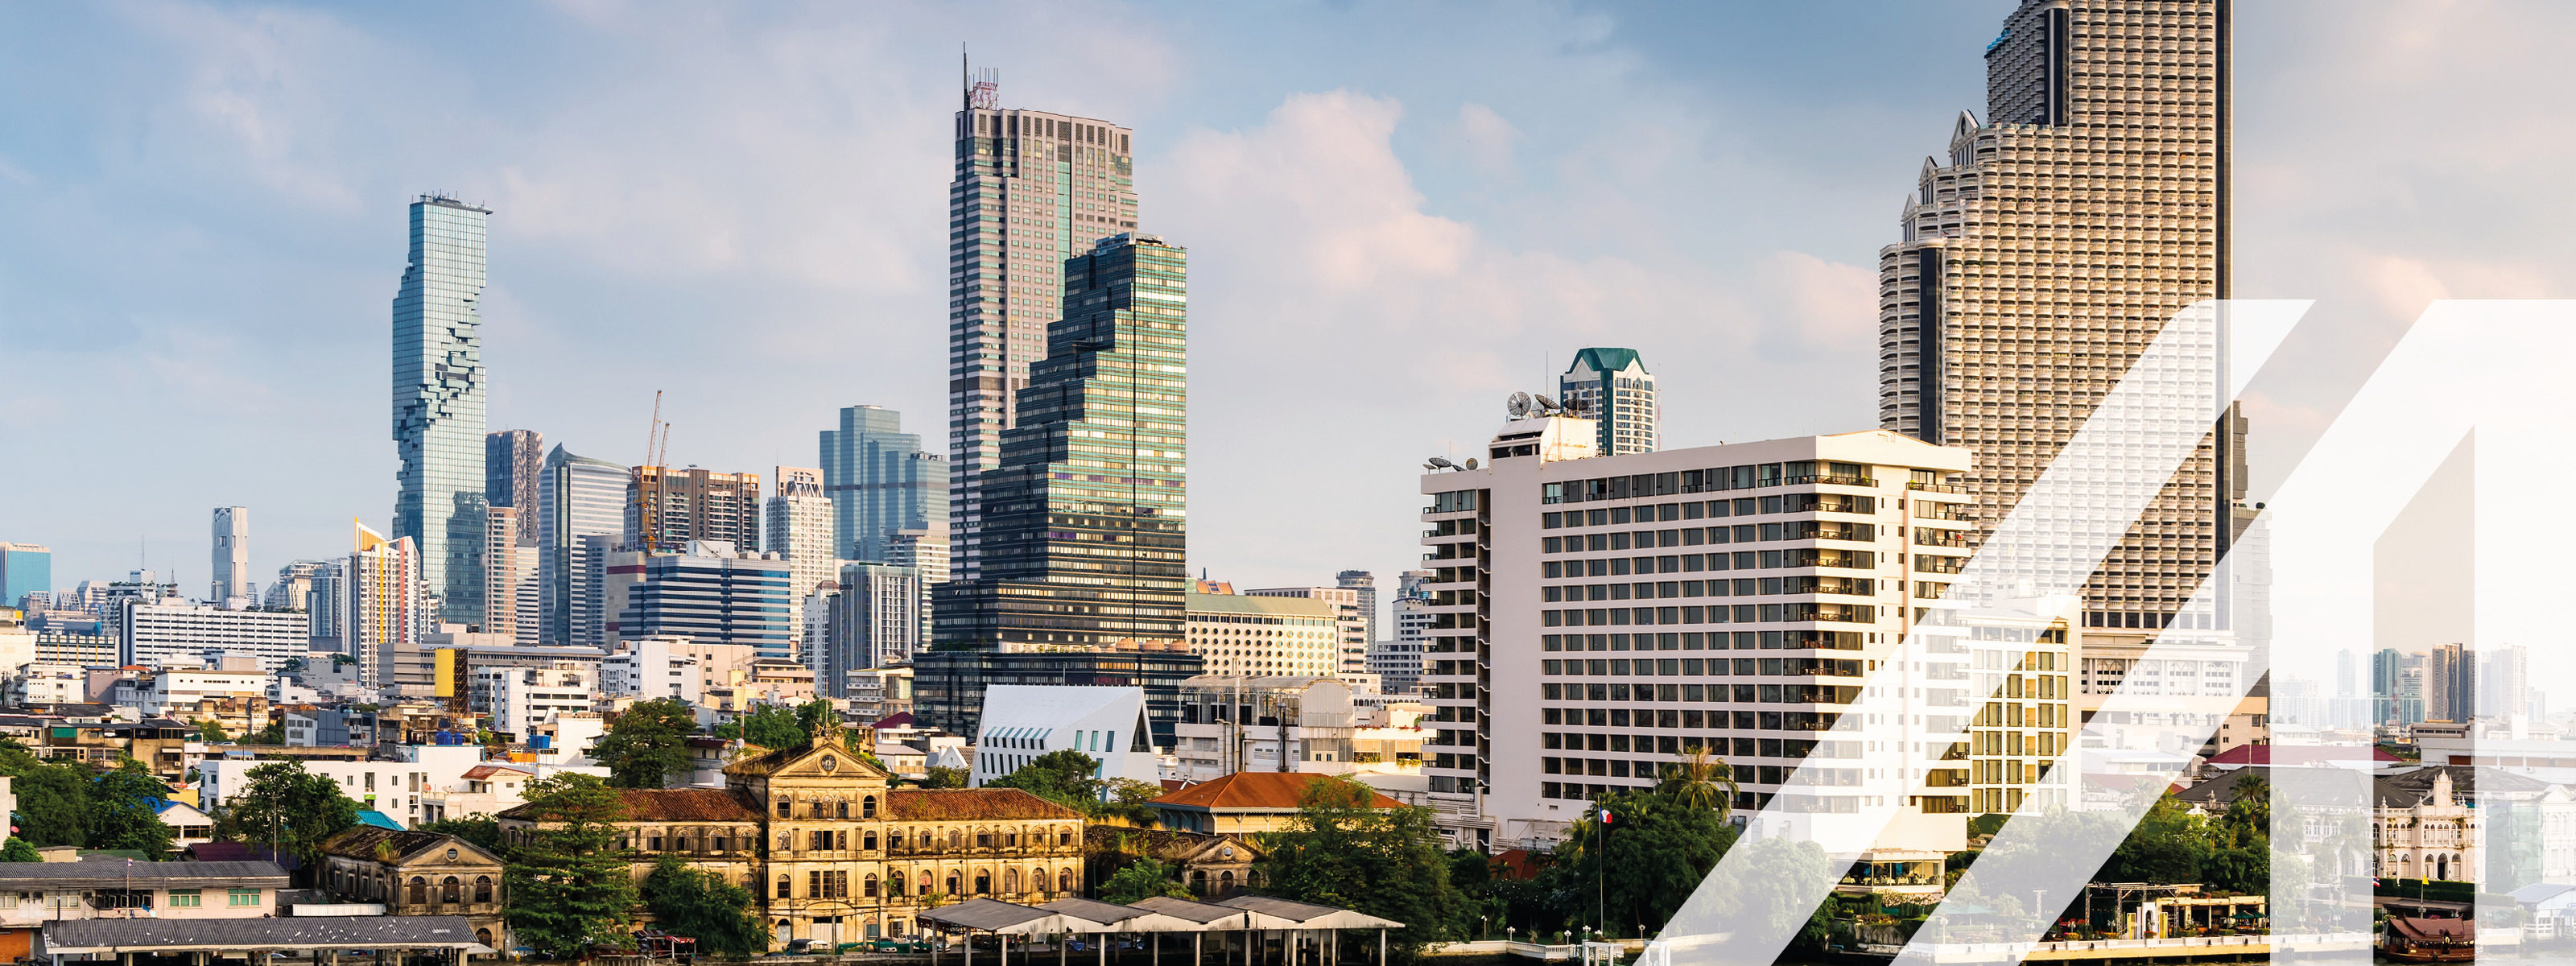 Business Downtown und Financial Center von Bangkok, Hauptstadt von Thailand. Moderne Hochhäuser und historische Gebäude
